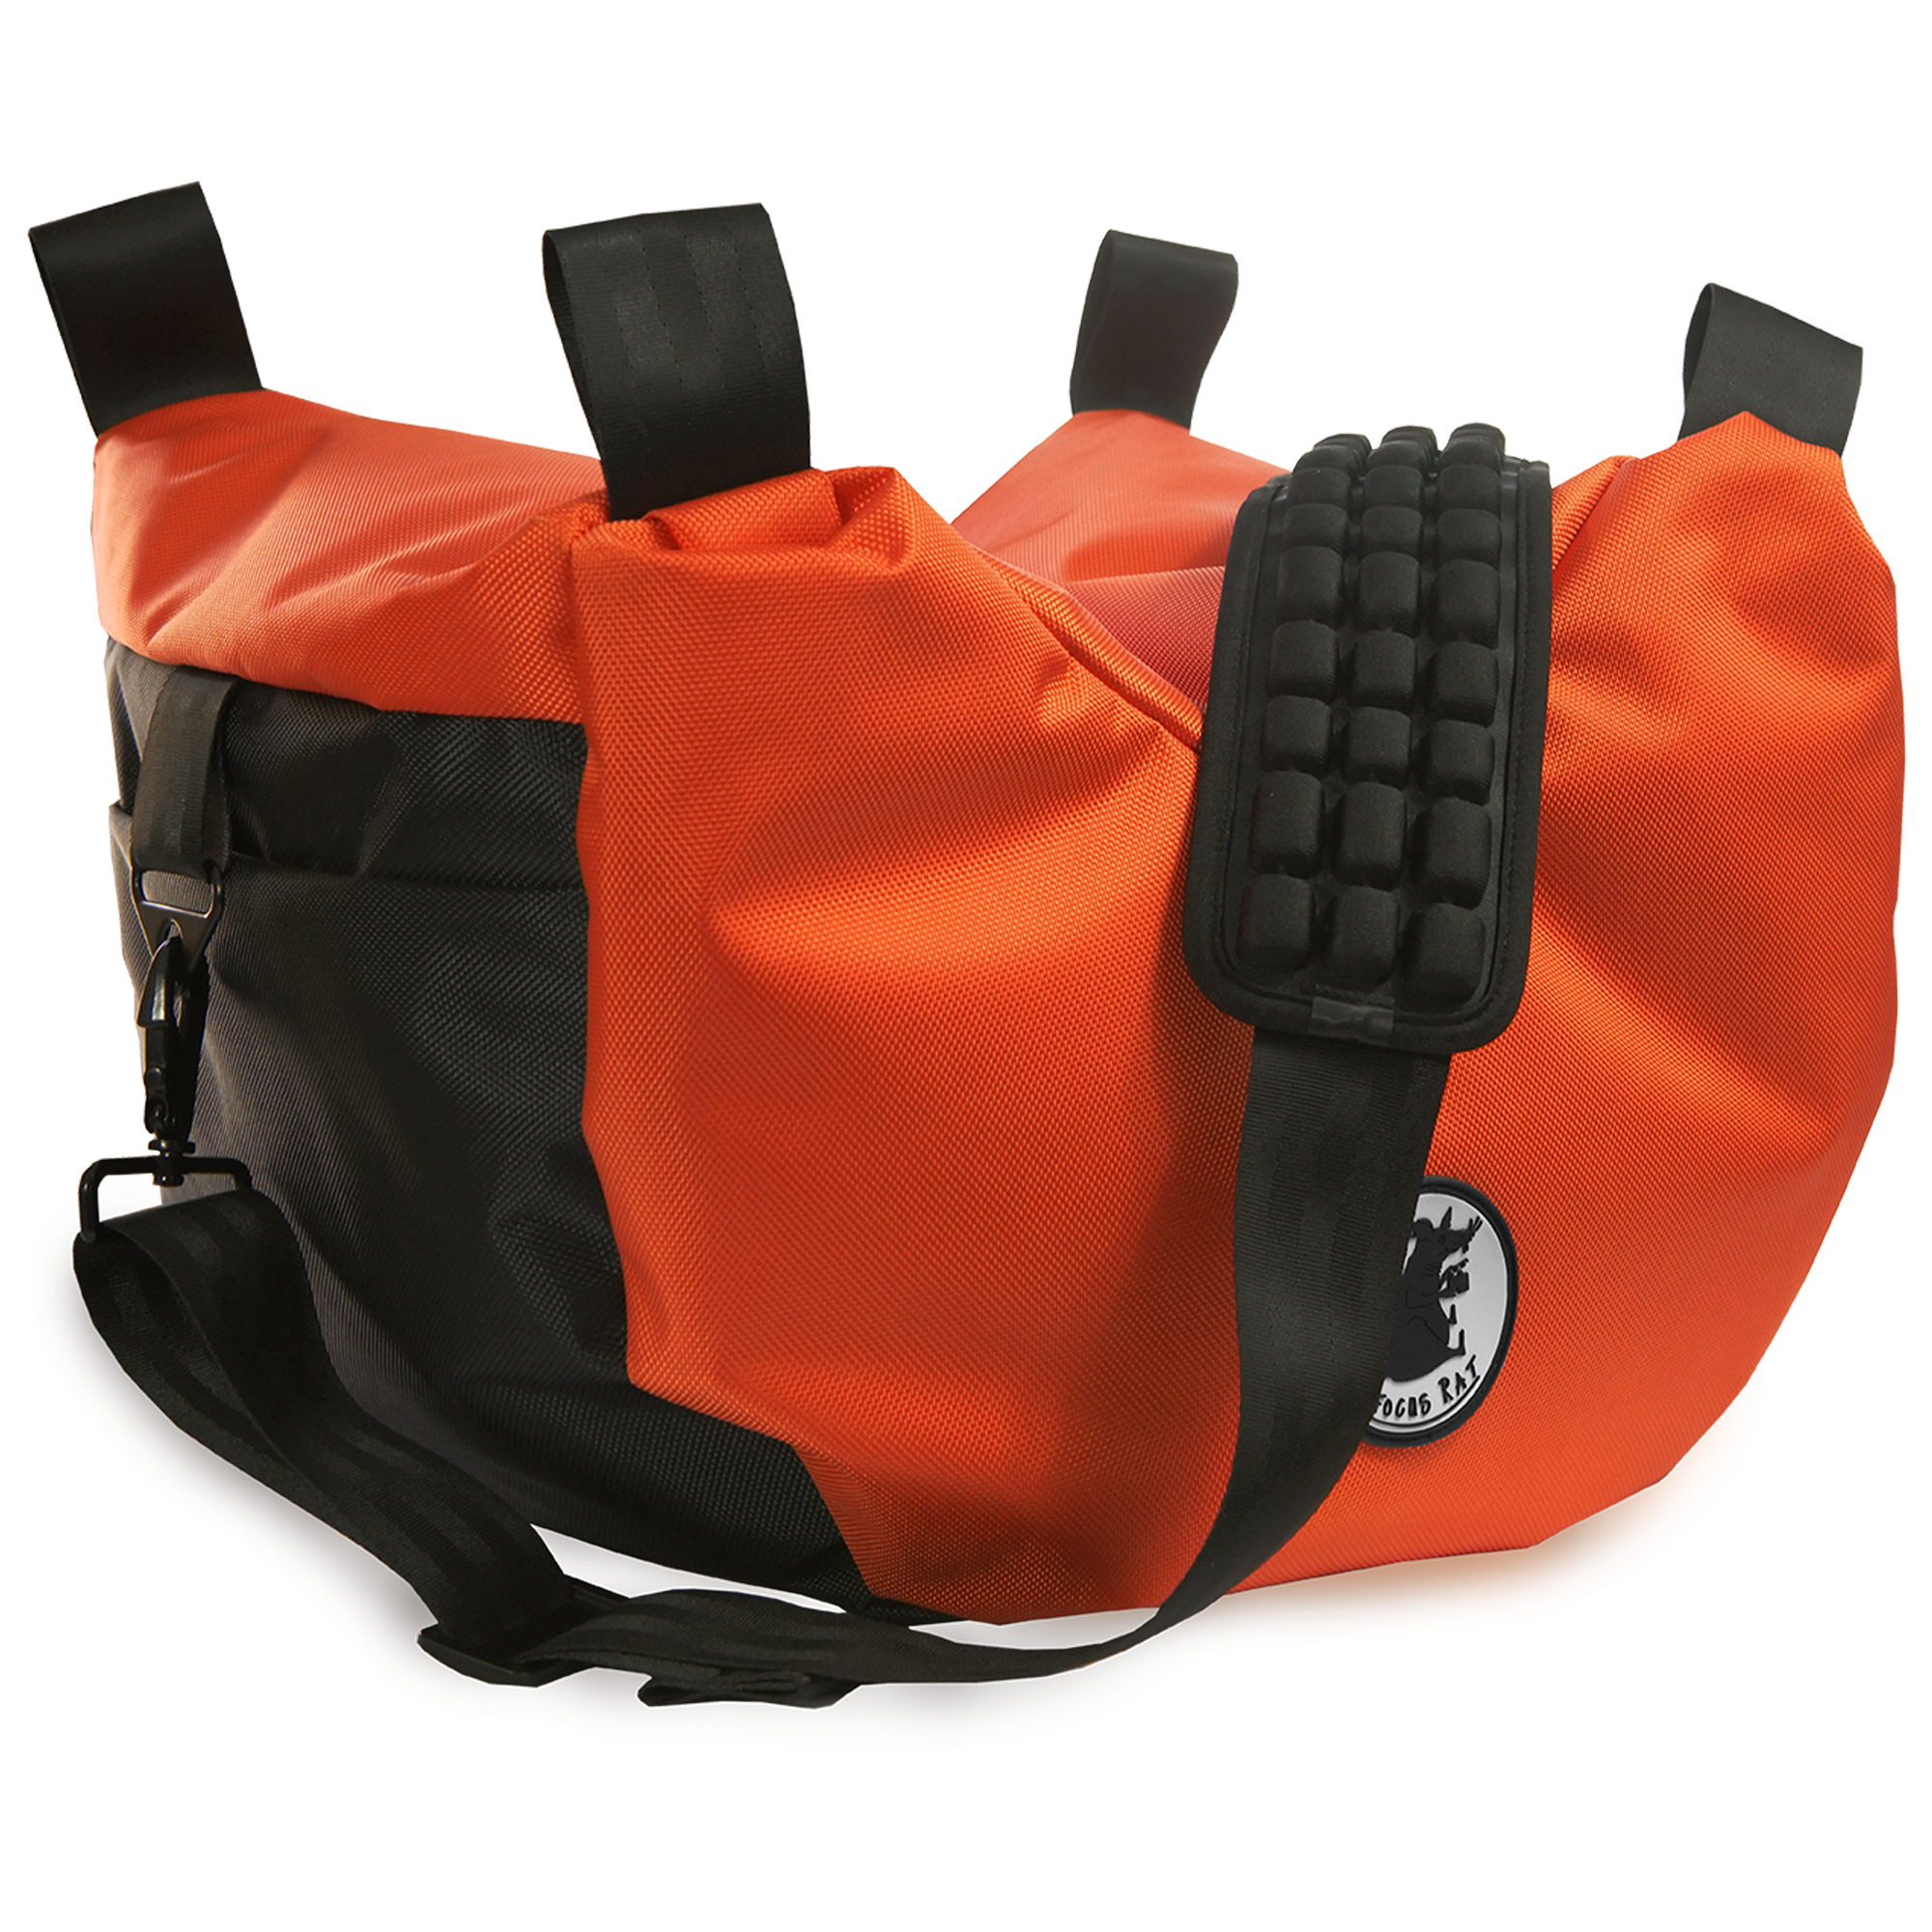 Cine Saddle like Steady Bag Burnt Orange color with Air Compress Shoulder Pad